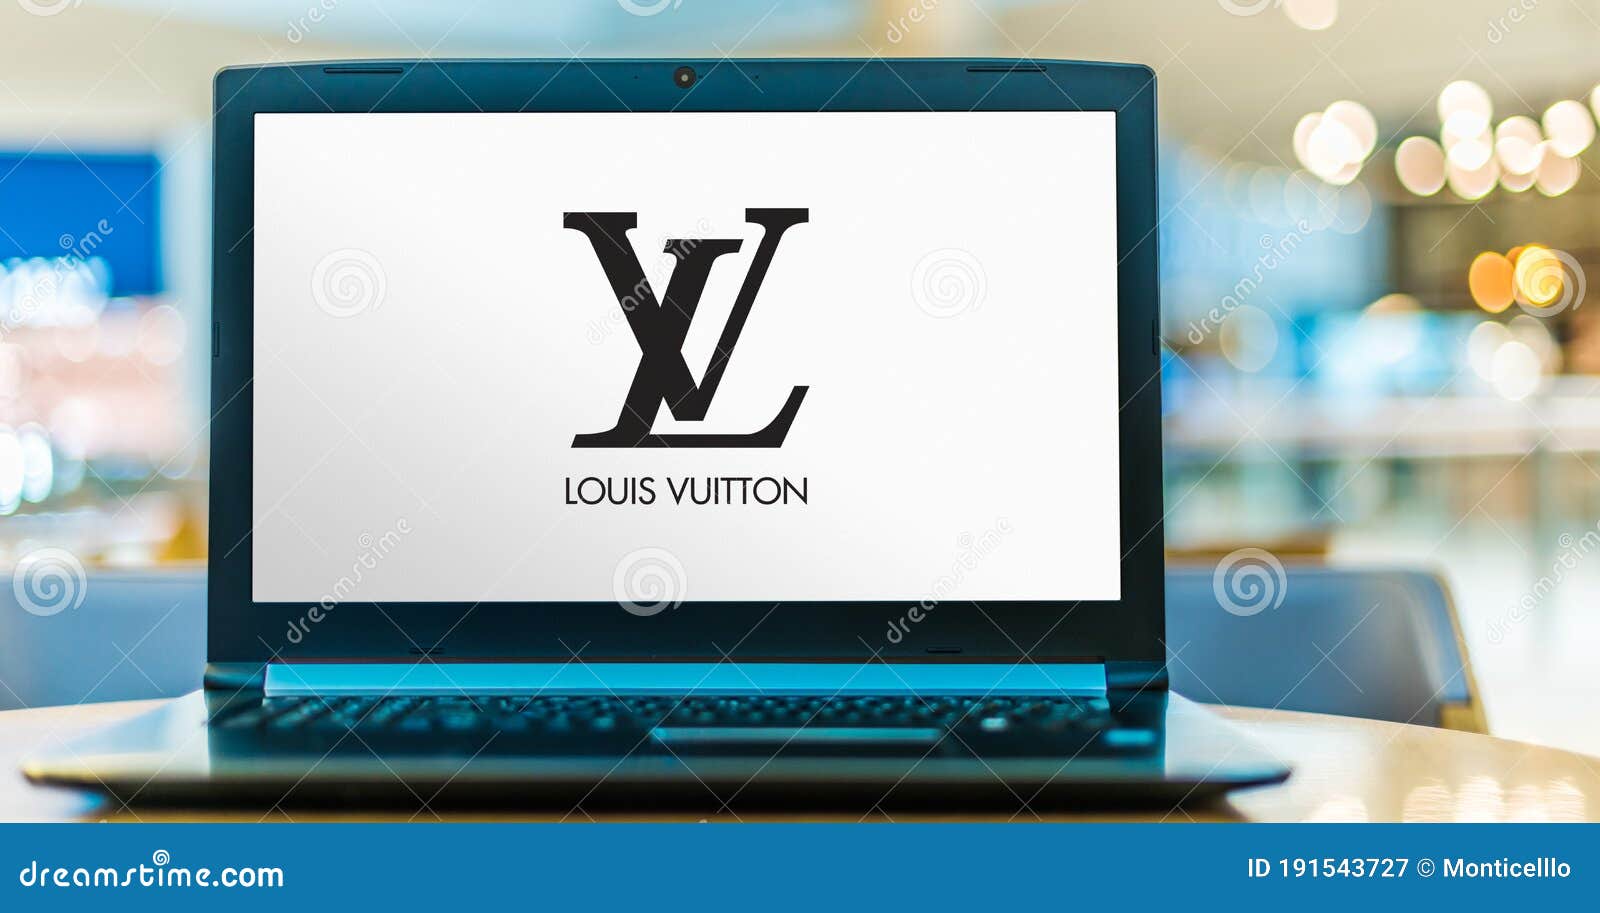 Computadora Portátil Que Muestra El Logo De Louis Vuitton Fotografía  editorial - Imagen de lifestyle, departamento: 191543727